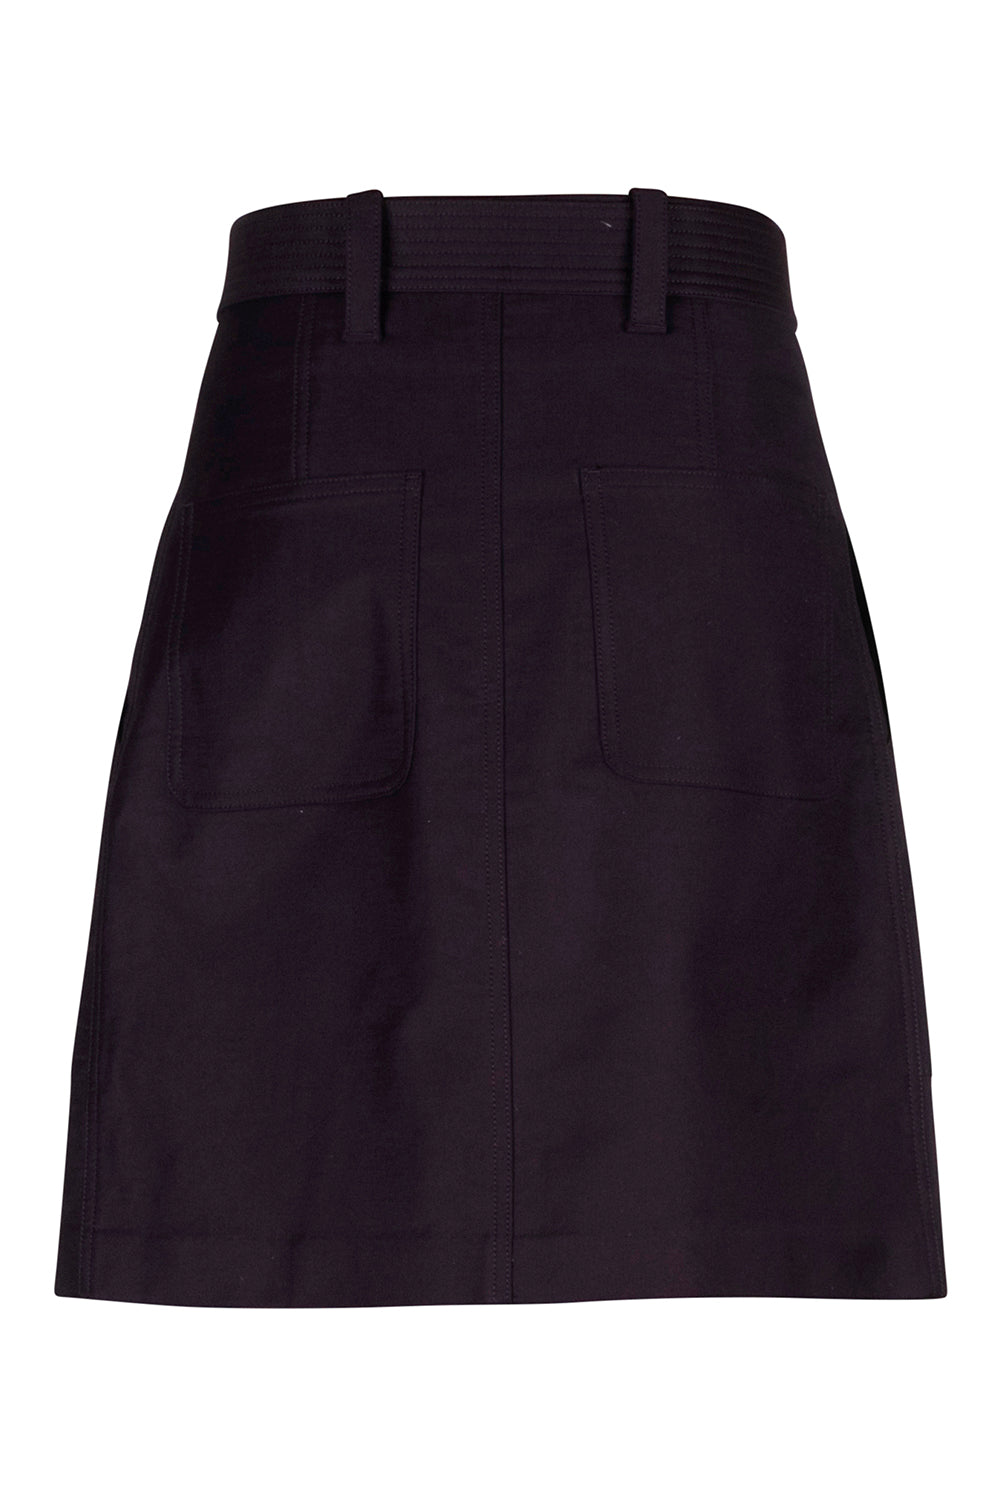 Belted Skirt - Deep Plum